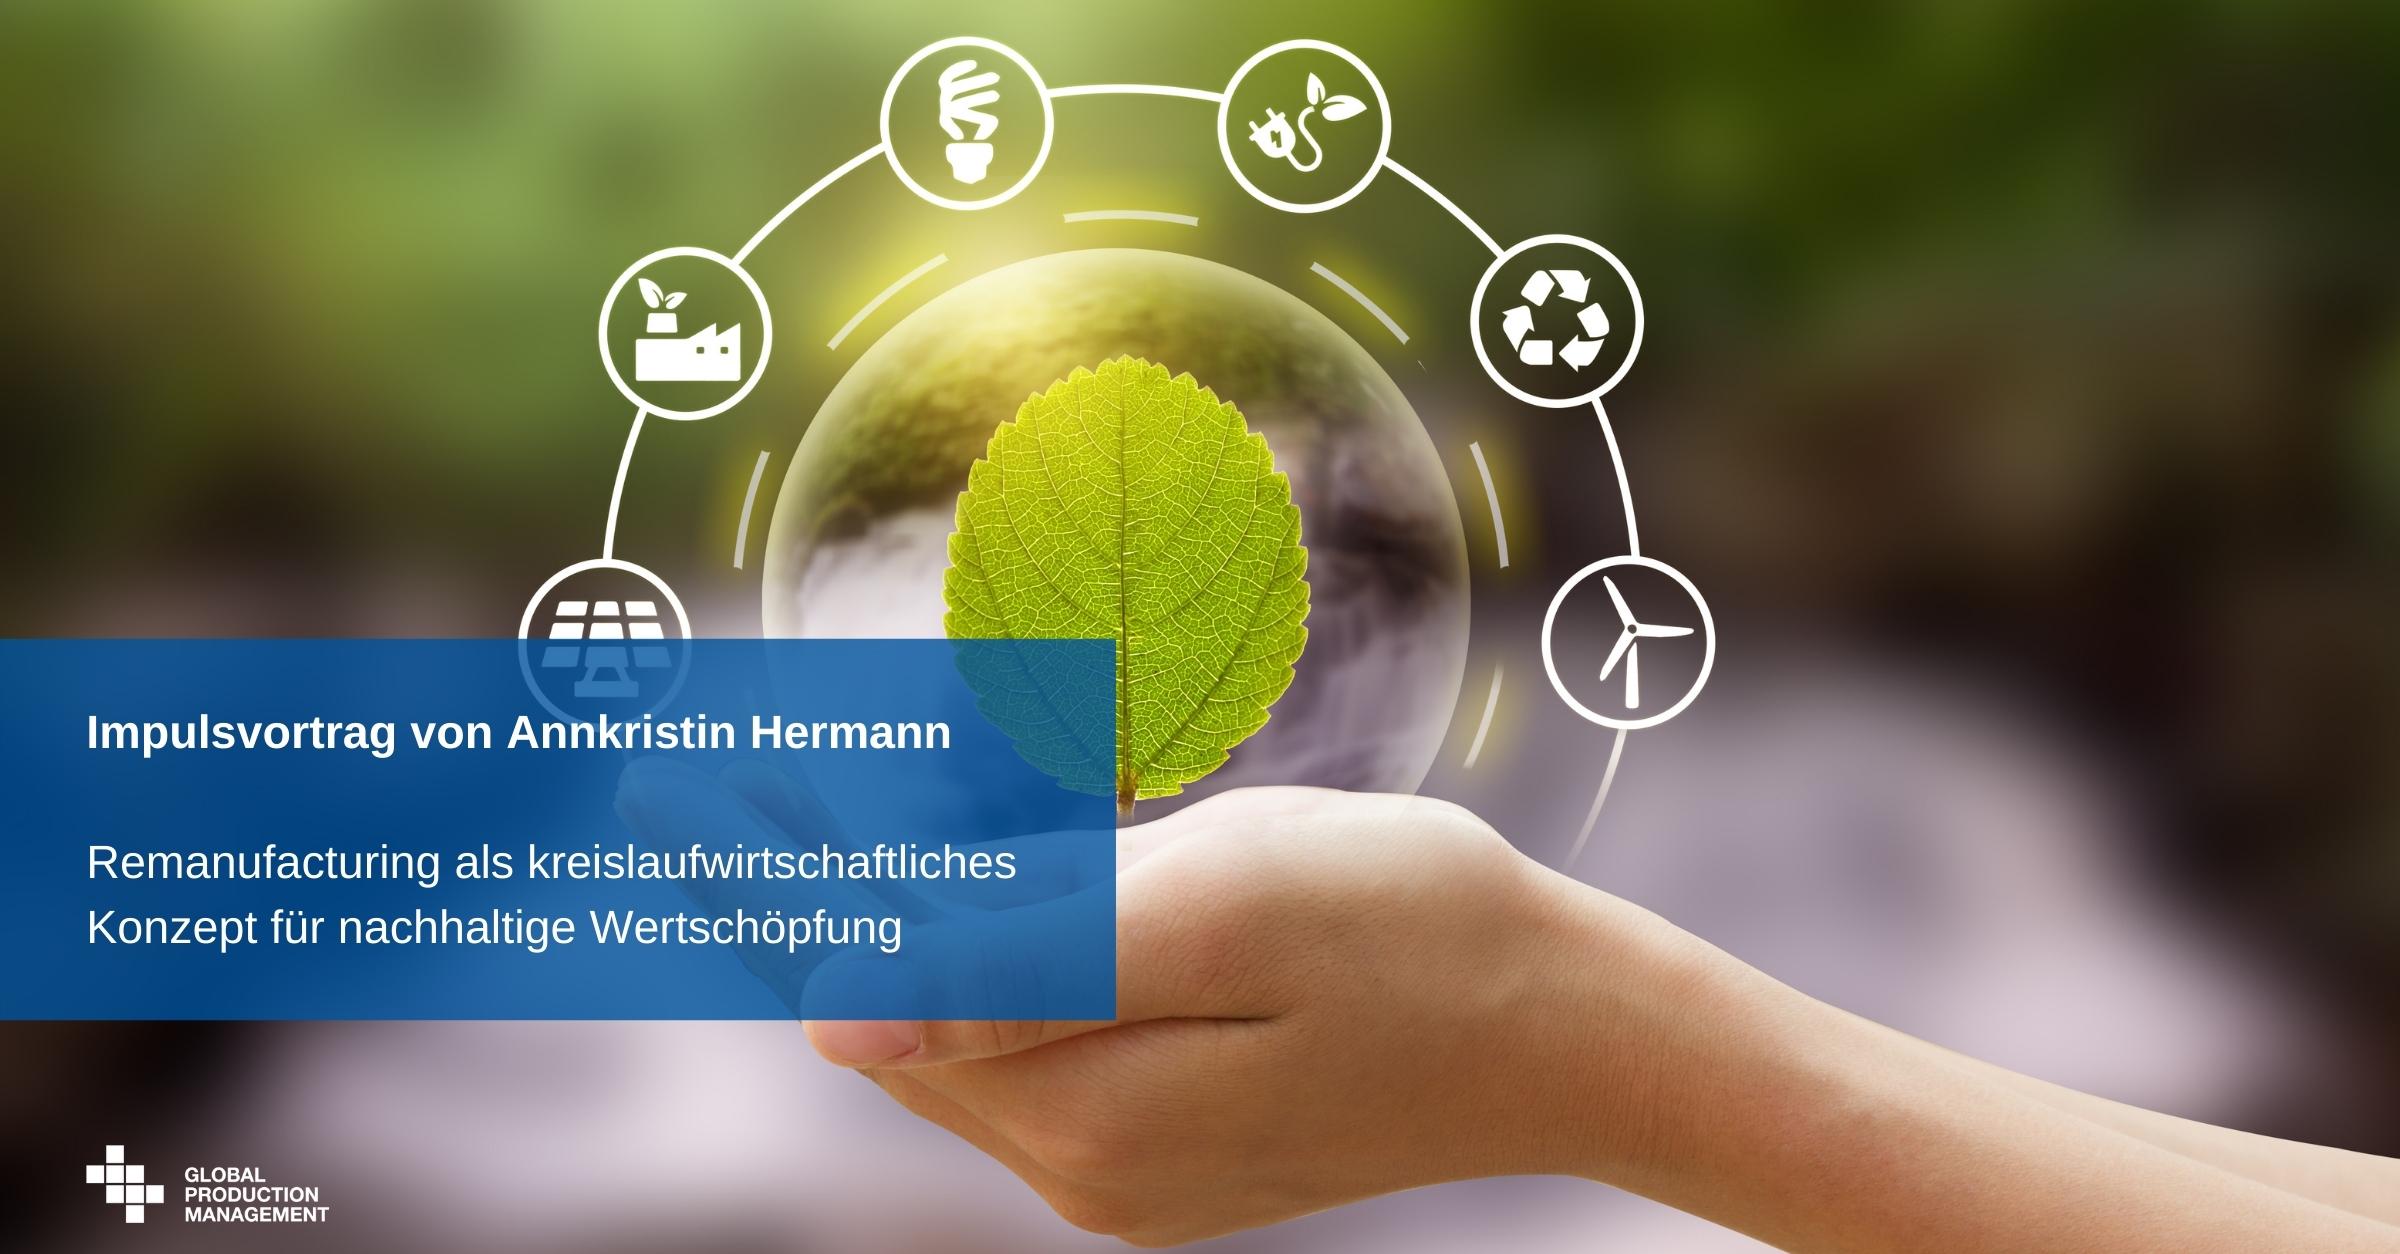 Impulsvortrag-von-Annkristin-Hermann-Remanufacturing-als-kreislaufwirtschaftliches-Konzept-fuer-nachhaltige-Wertschoepfung Nachhaltigkeit im Produktionssystem 